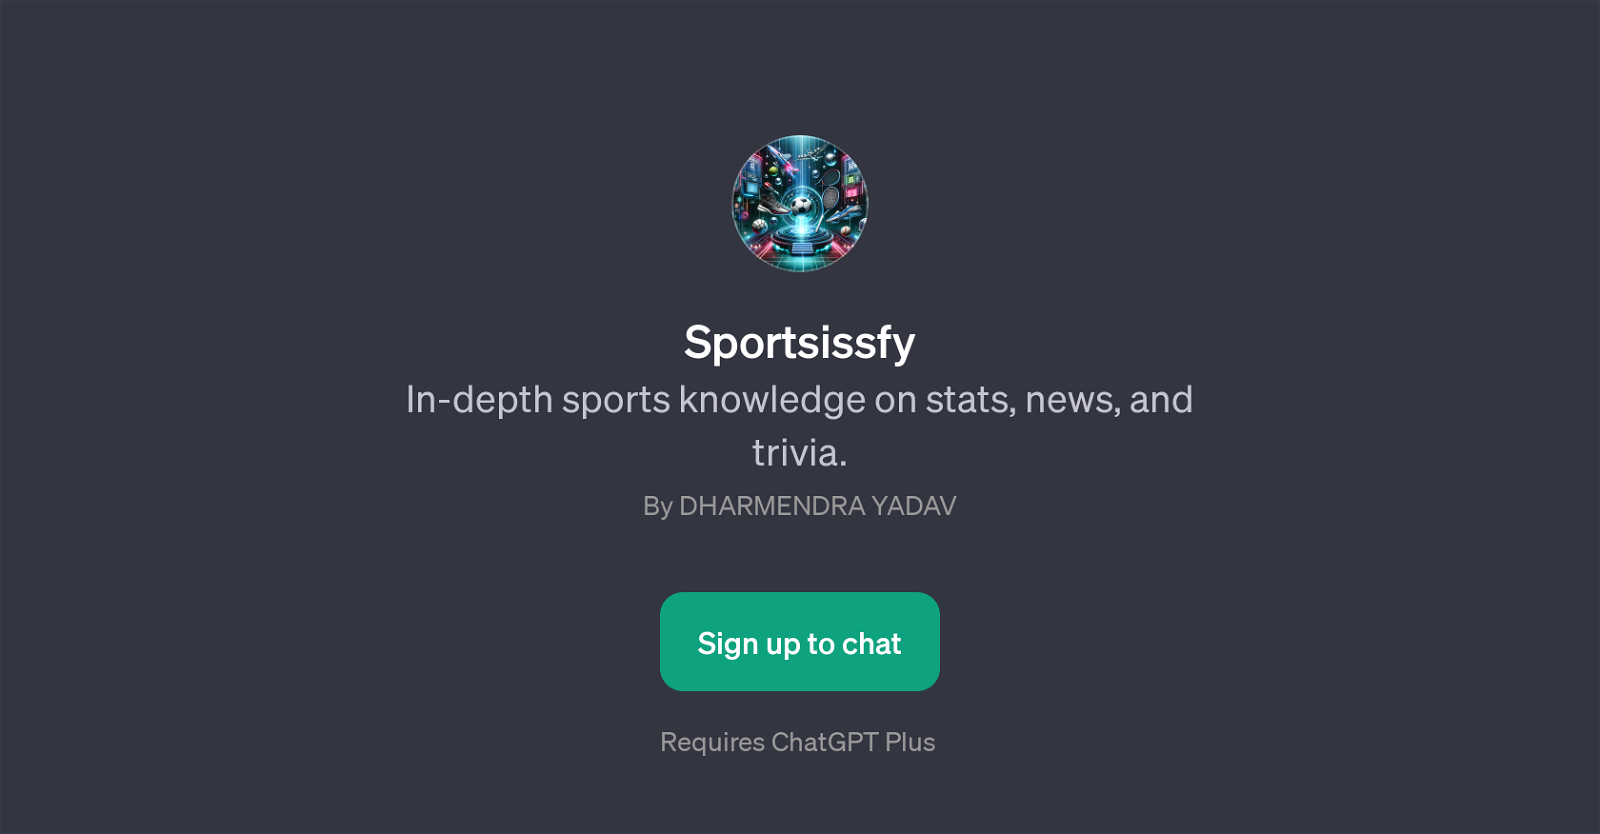 Sportsissfy website